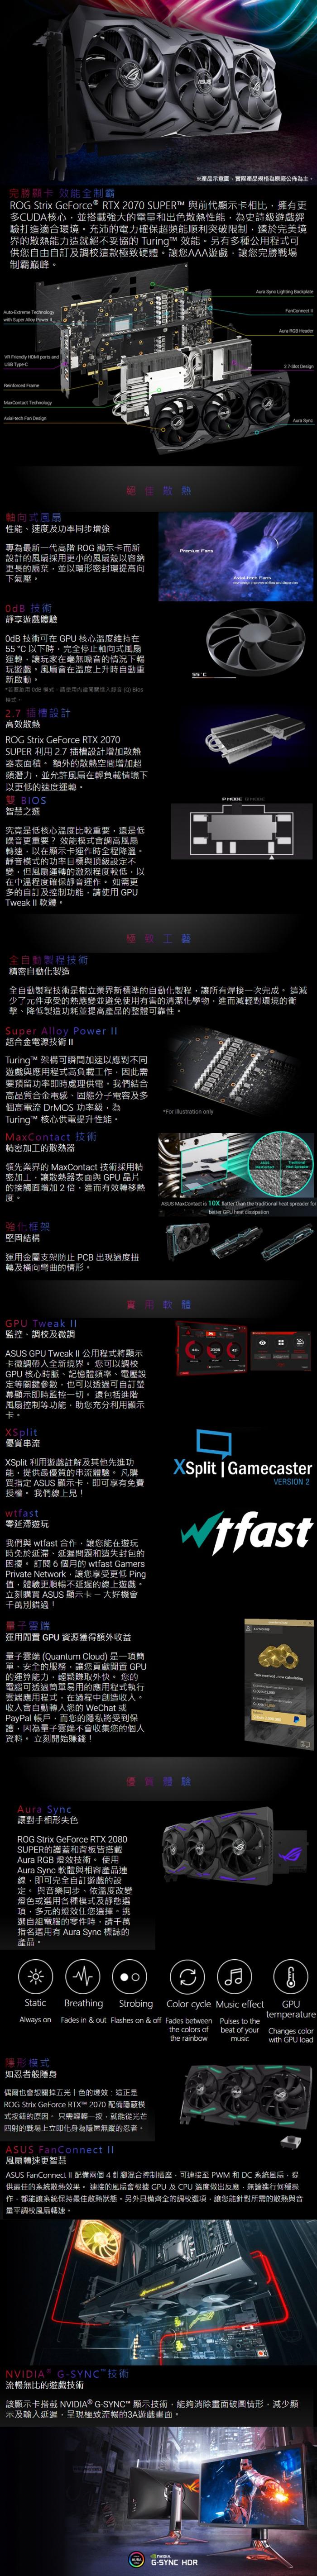 華碩 ROG-STRIX-RTX2070S-O8G-GAMING